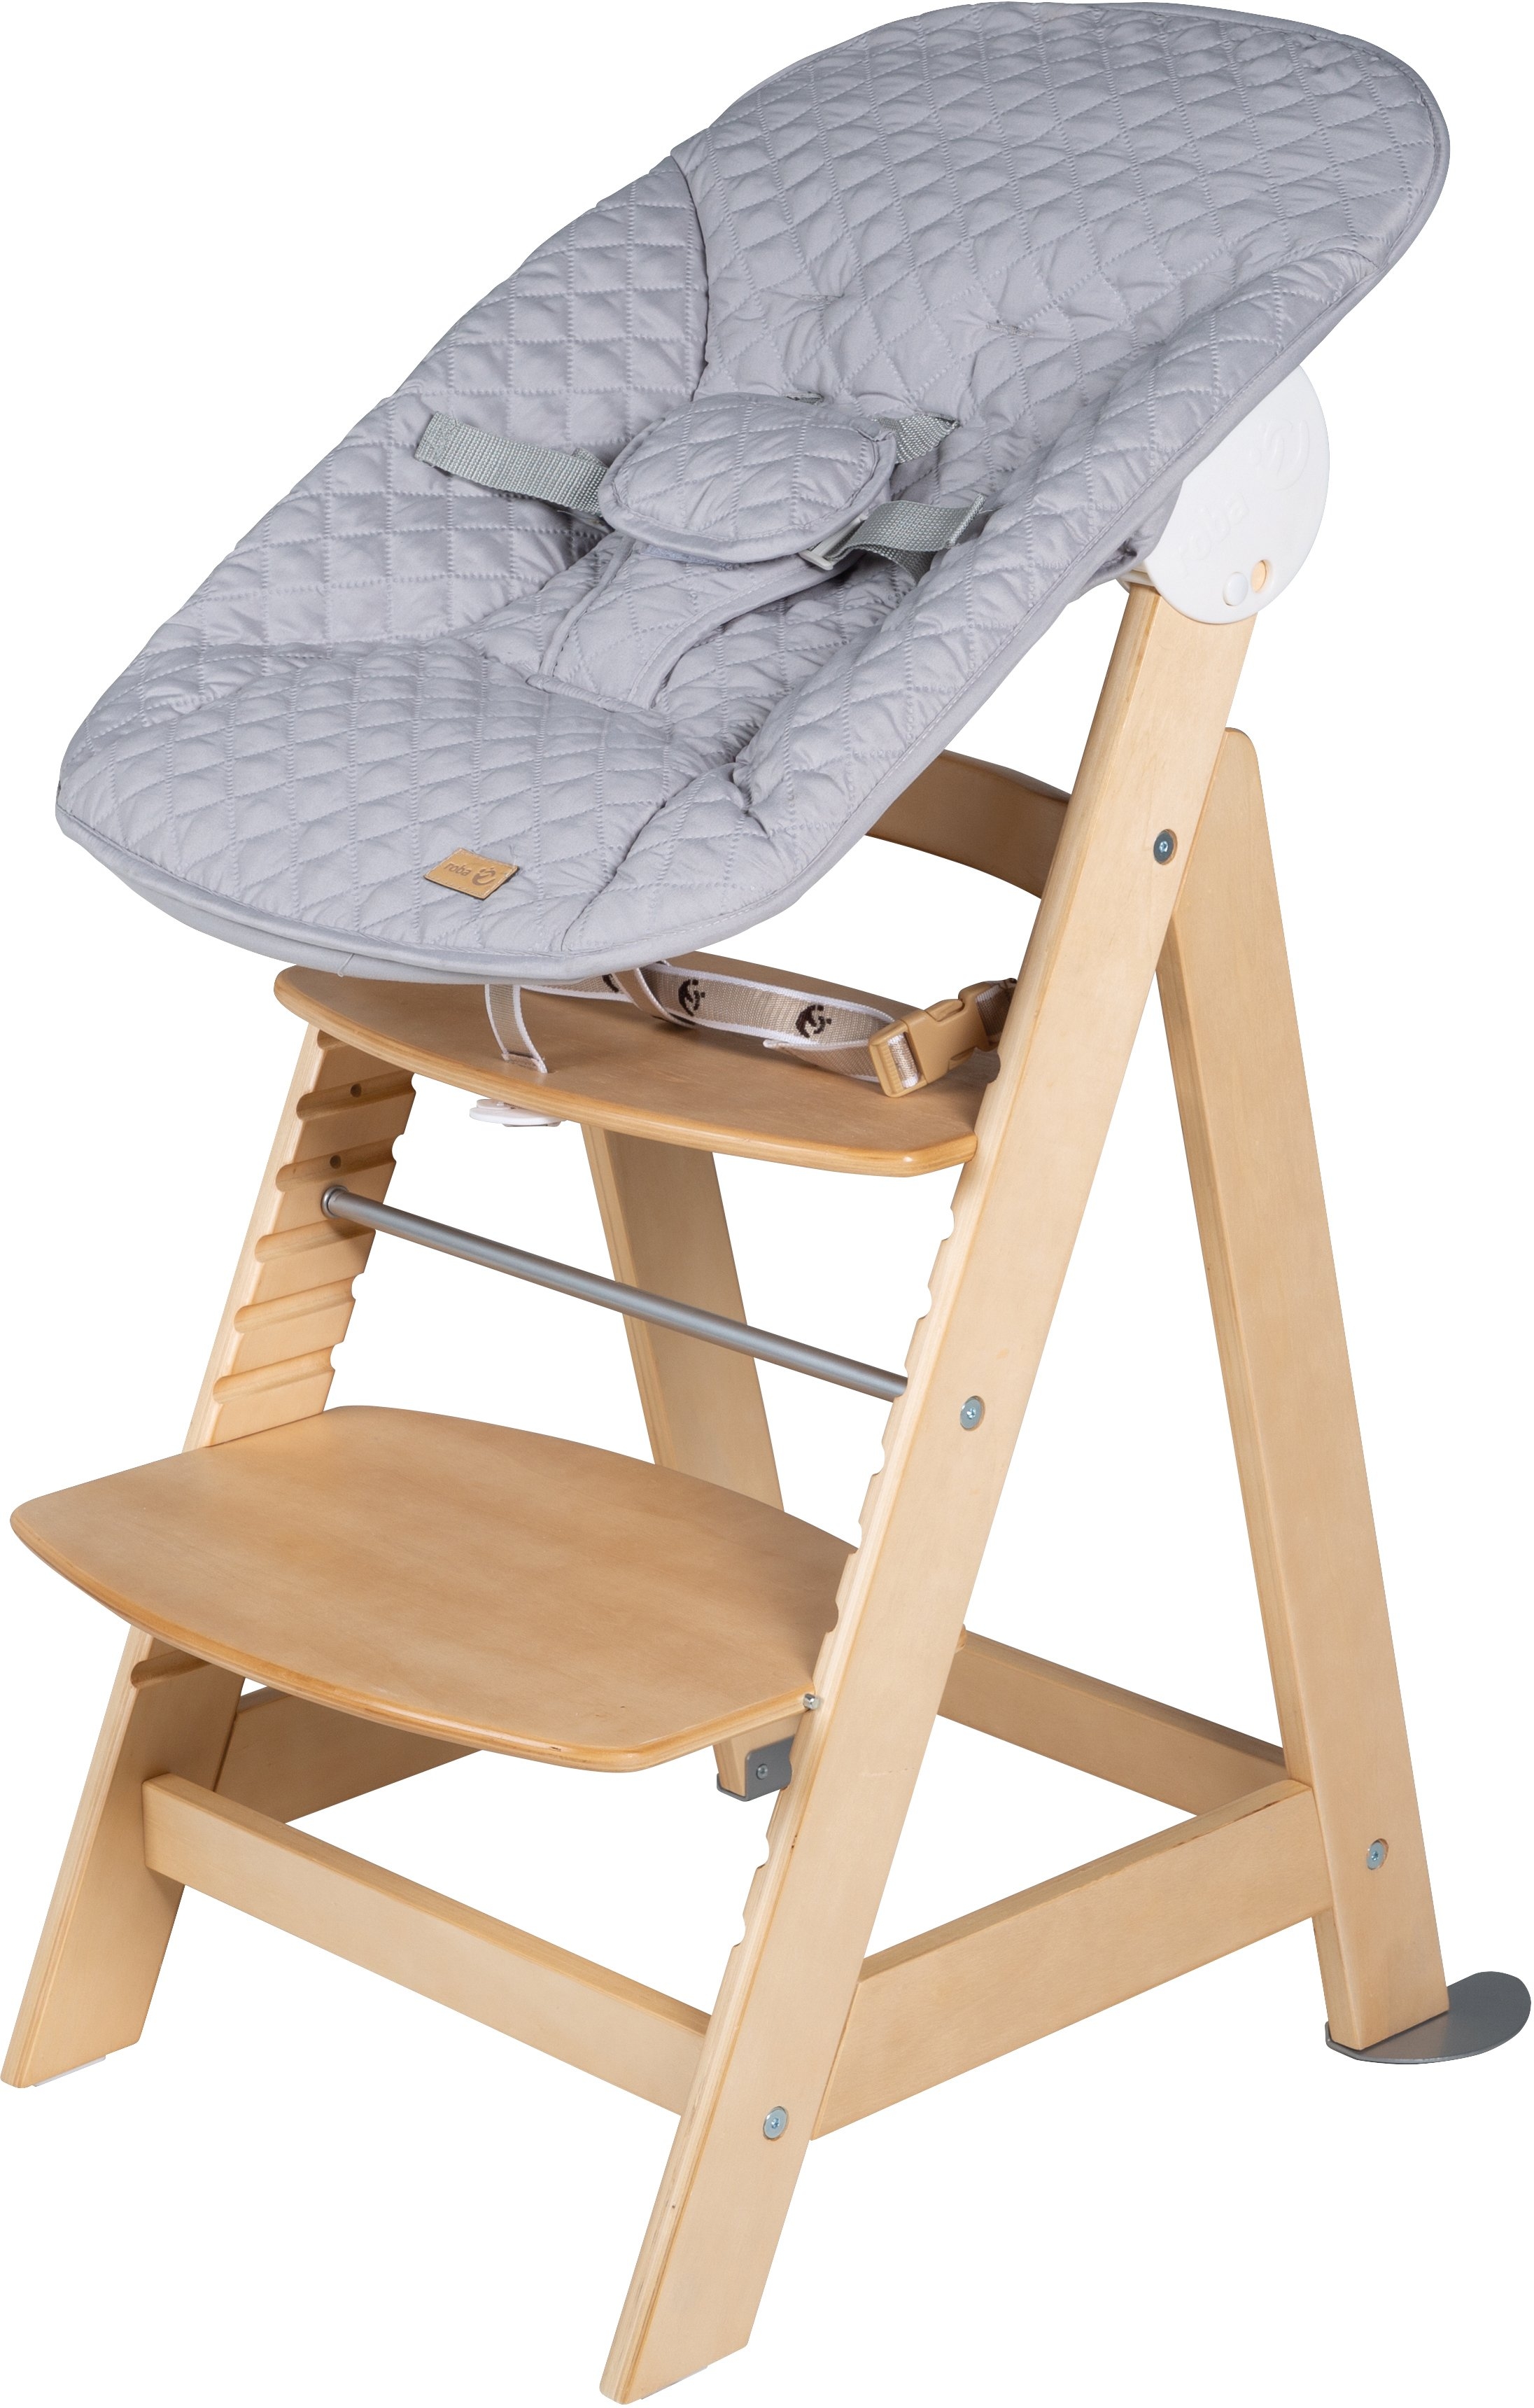 Begrijpen oneerlijk Bot Roba® Kinderstoel Meegroeistoel 2-in-1 Set Style Born Up met pasgeboren  gehechtheid in de online winkel | OTTO